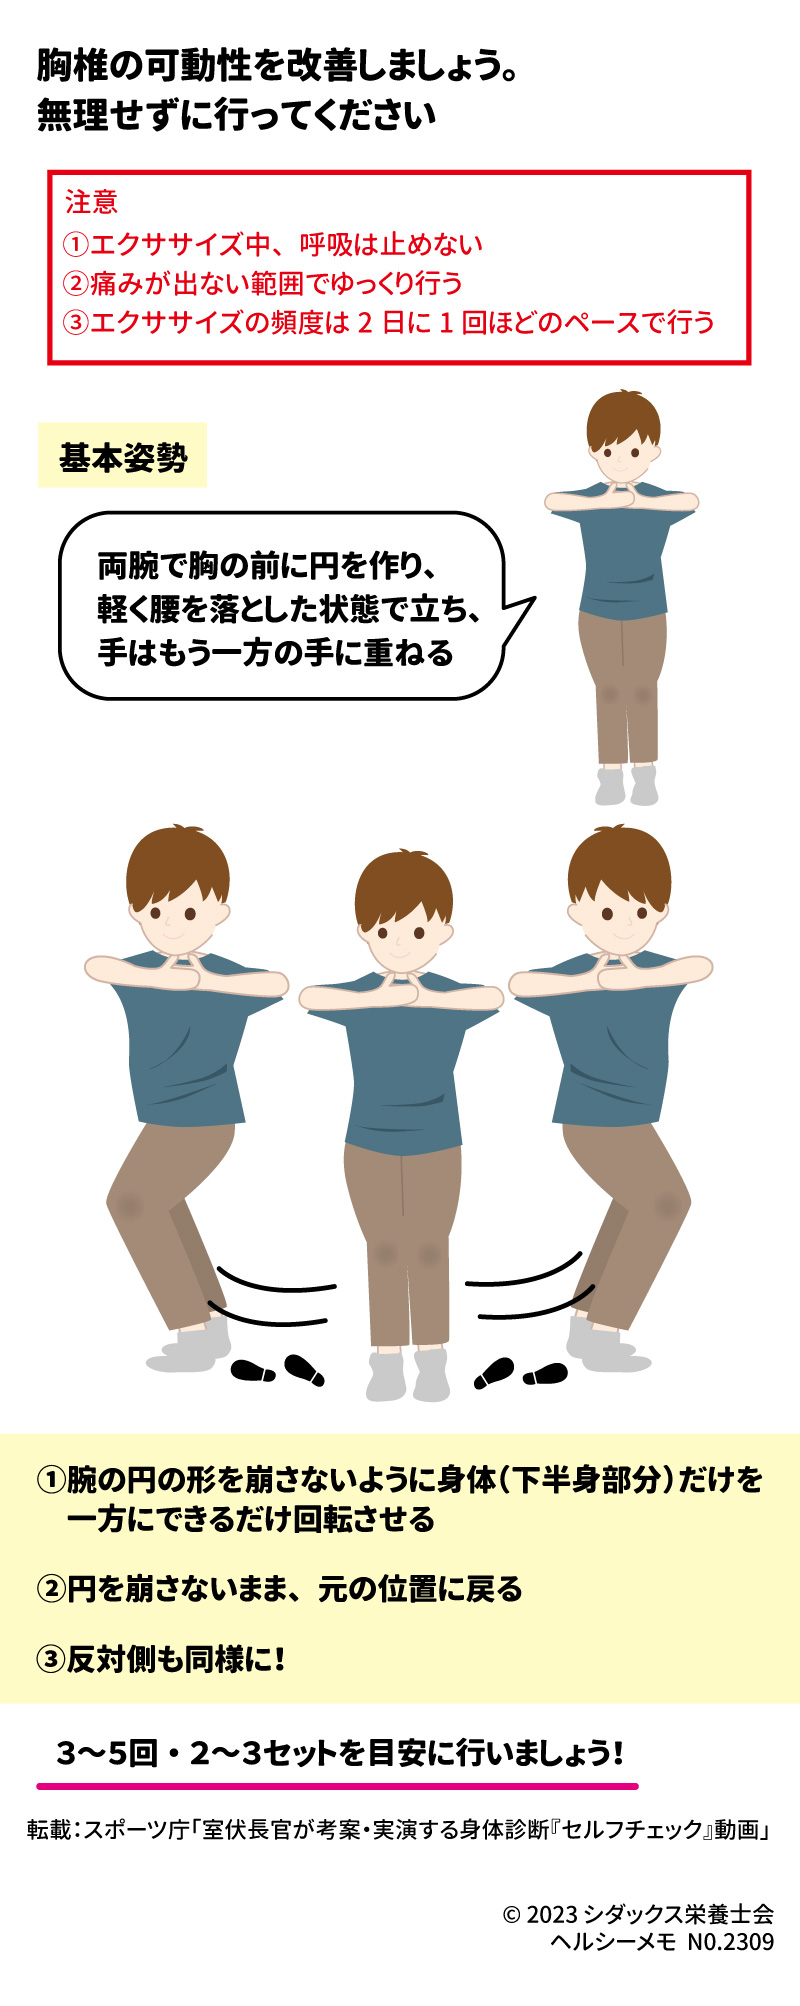 レッツエクササイズ！胸椎の柔らかさ 胸椎の柔らかさ（可動性）を改善しましょう。無理せずに行ってください 基本姿勢 両腕で胸の前に円を作り、軽く腰を落とした状態で立ち、手はもう一方の手に重ねる ①腕の円の形を崩さないように身体（下半身部分）だけを一方にできるだけ回転させる ②円を崩さないまま、元の位置に戻る ③反対側も同様に！ ３～５回・２～３セットを目安に行いましょう！